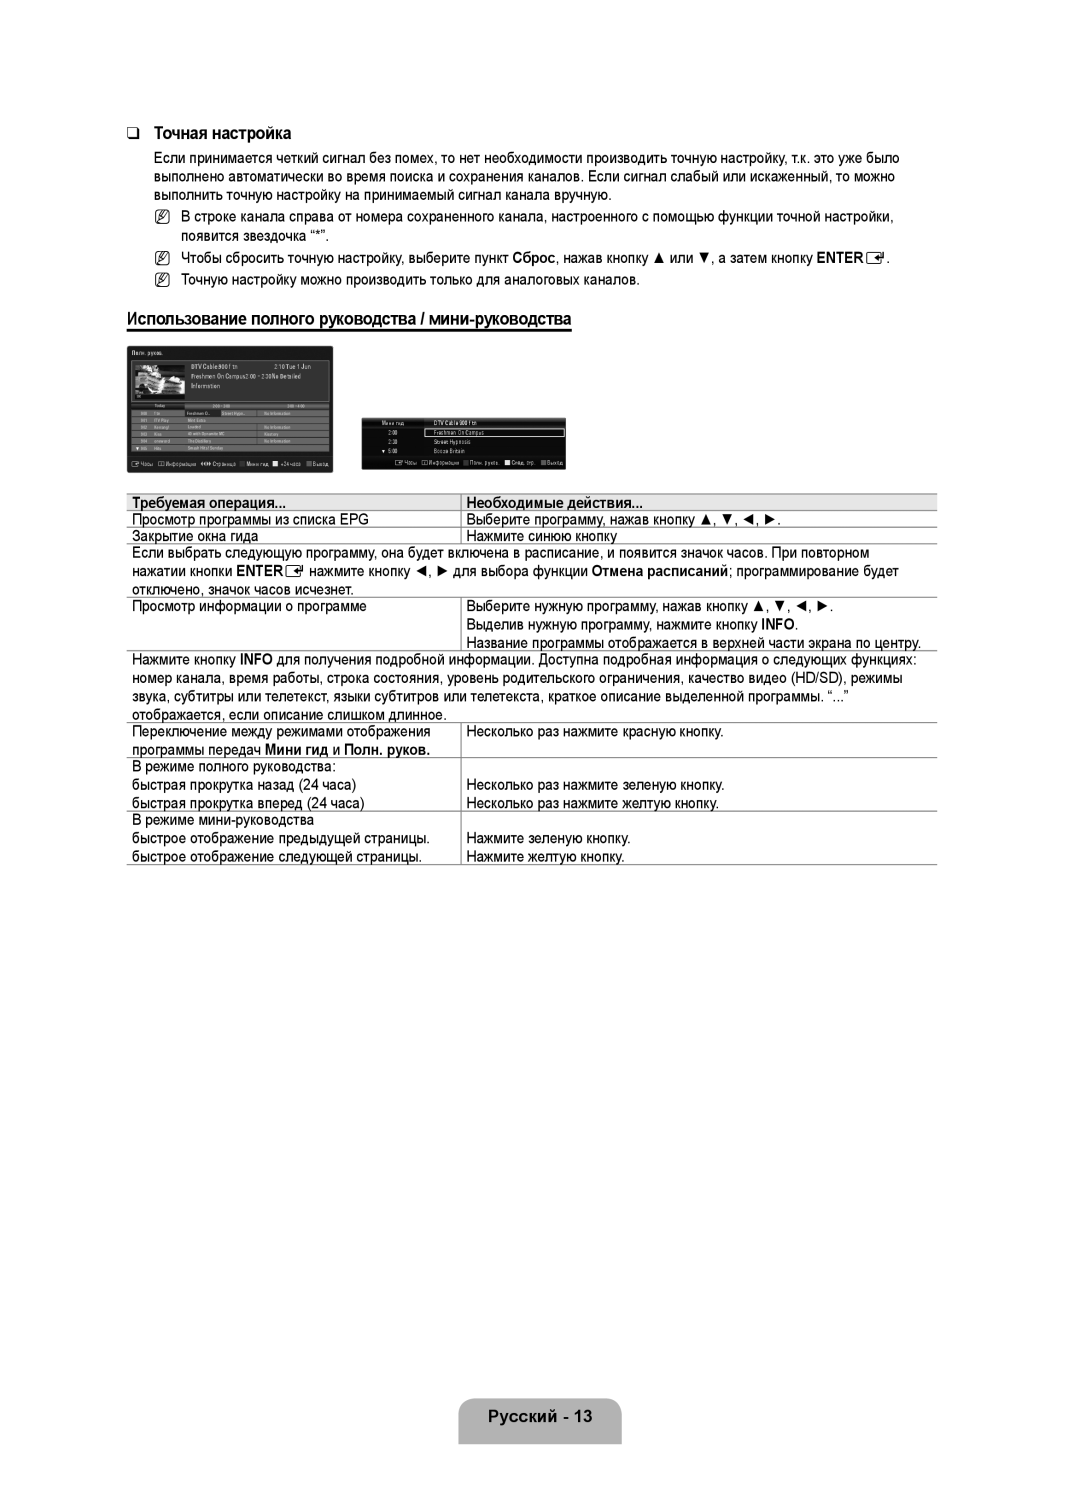 Samsung UE46B6000VWXUA Точная настройка, Использование полного руководства / мини-руководства, Требуемая операция, Русский 